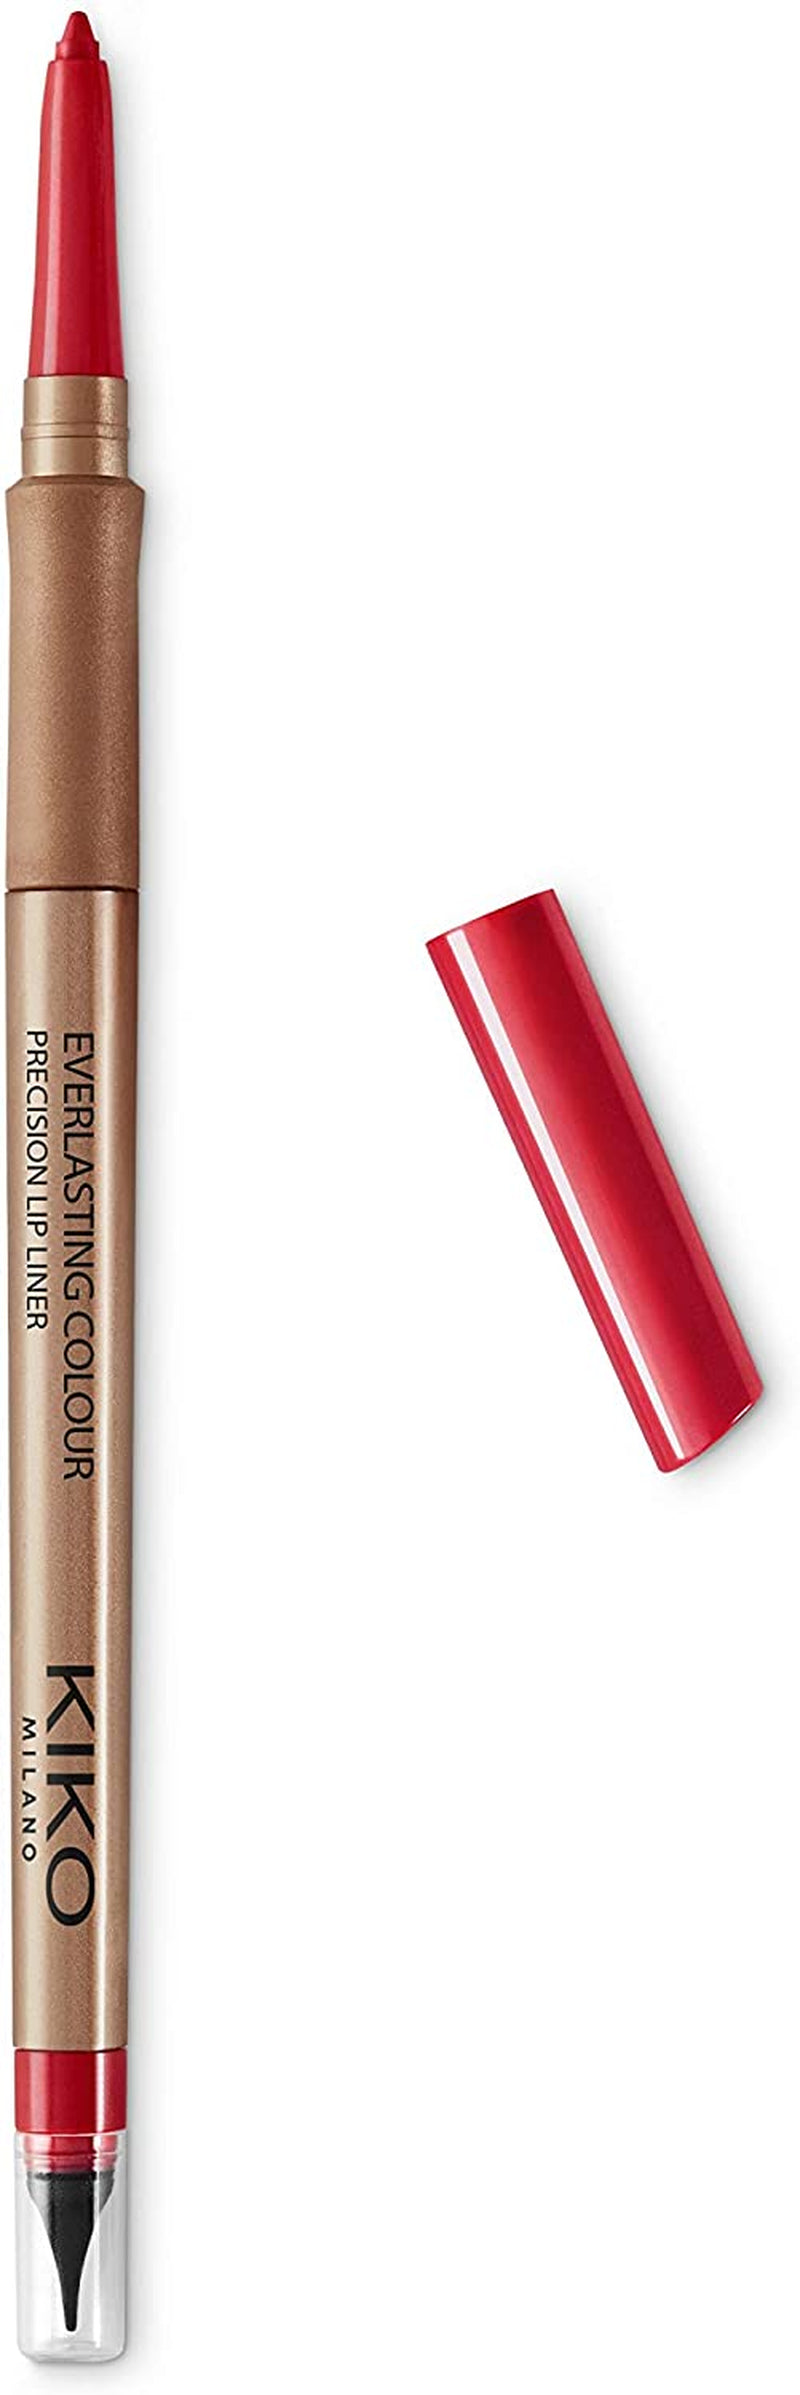 KIKO Milano Everlasting Colour Precision Lip Liner 409 | Automatic Lip Pencil